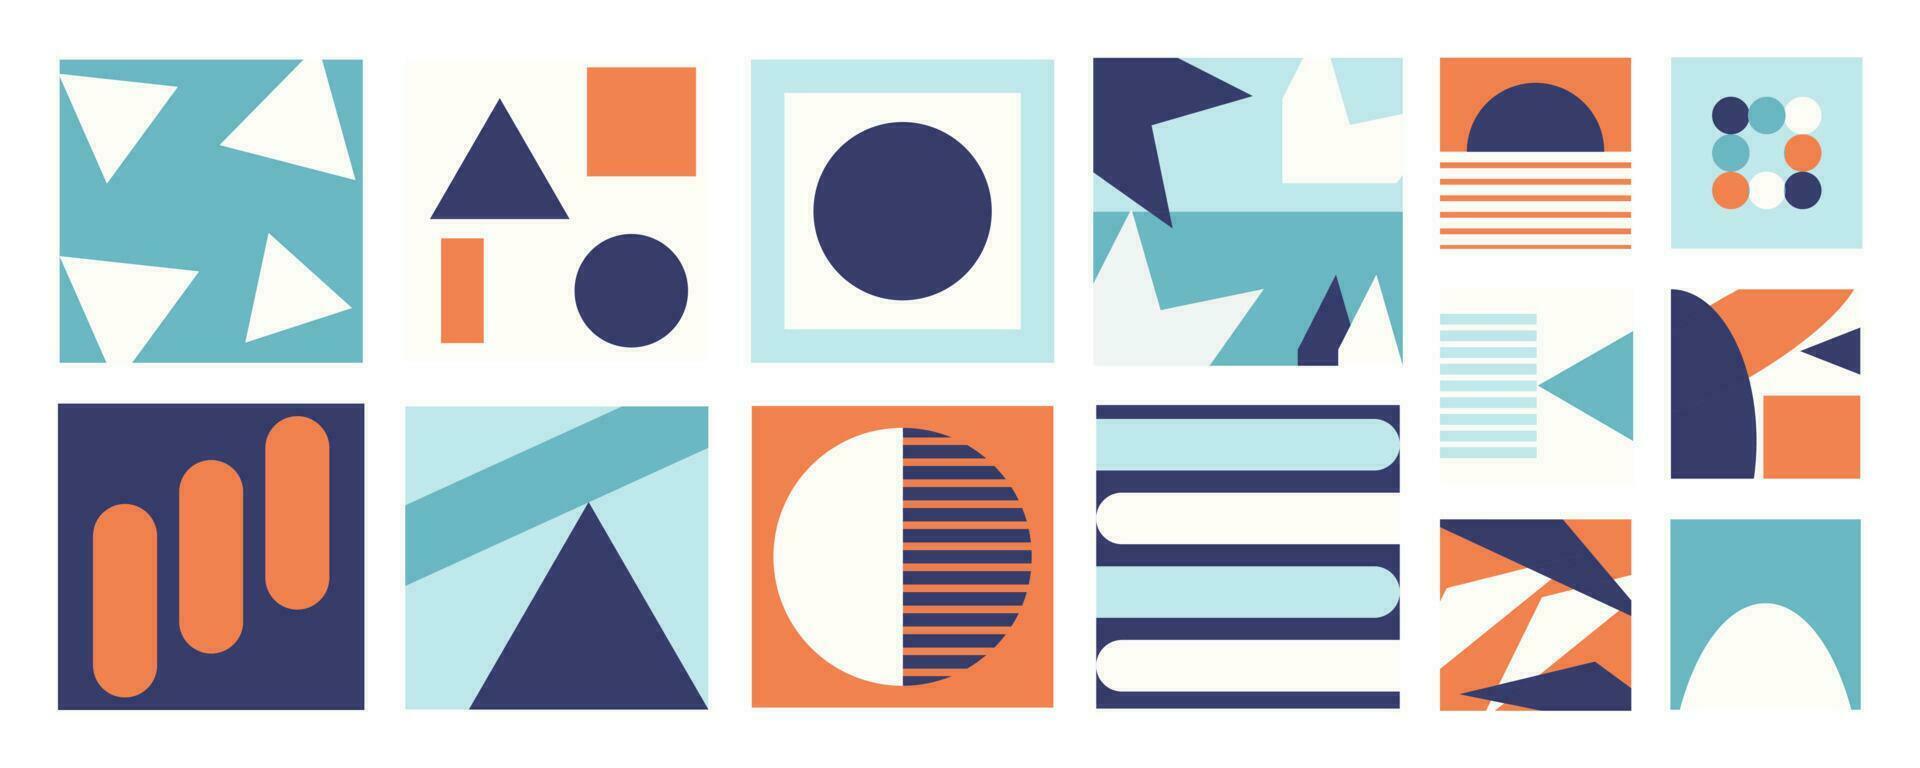 uppsättning av geometrisk mönster element i 70s stil. retro häftig abstrakt samling av vibrerande färgrik former, cirklar, polygon. modern trendig illustration design för omslag, tyg, affisch, vägg konst. vektor